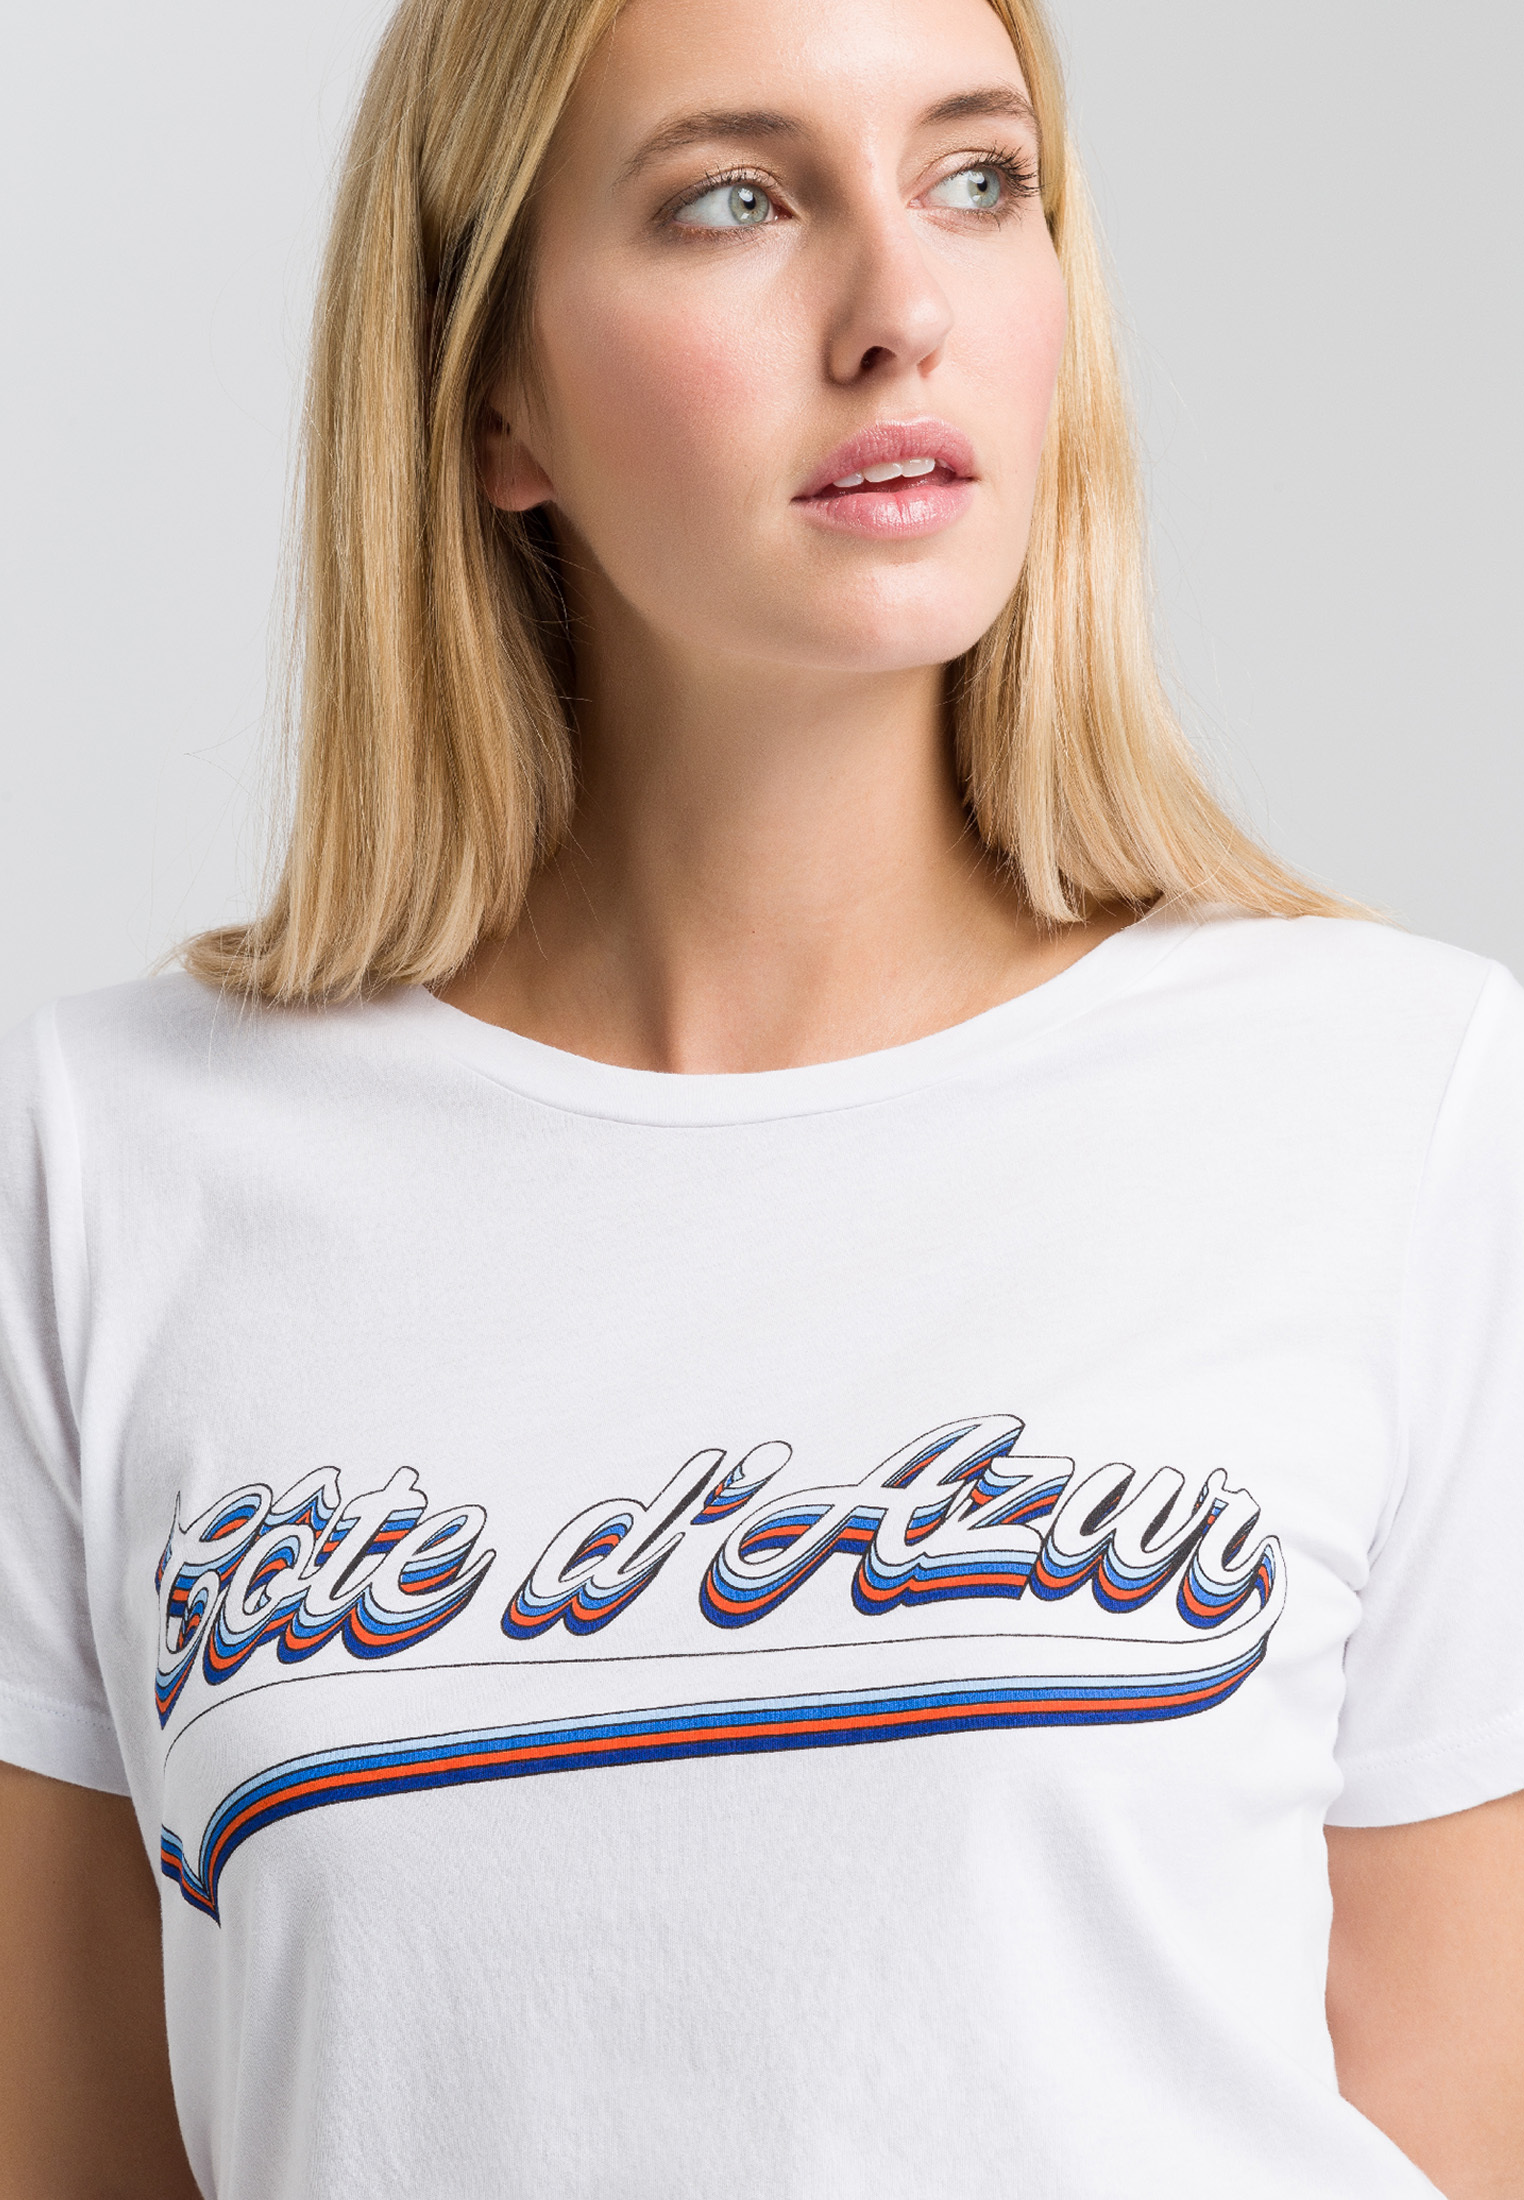 T-shirt with Côte d'Azur print | Shirts | Fashion